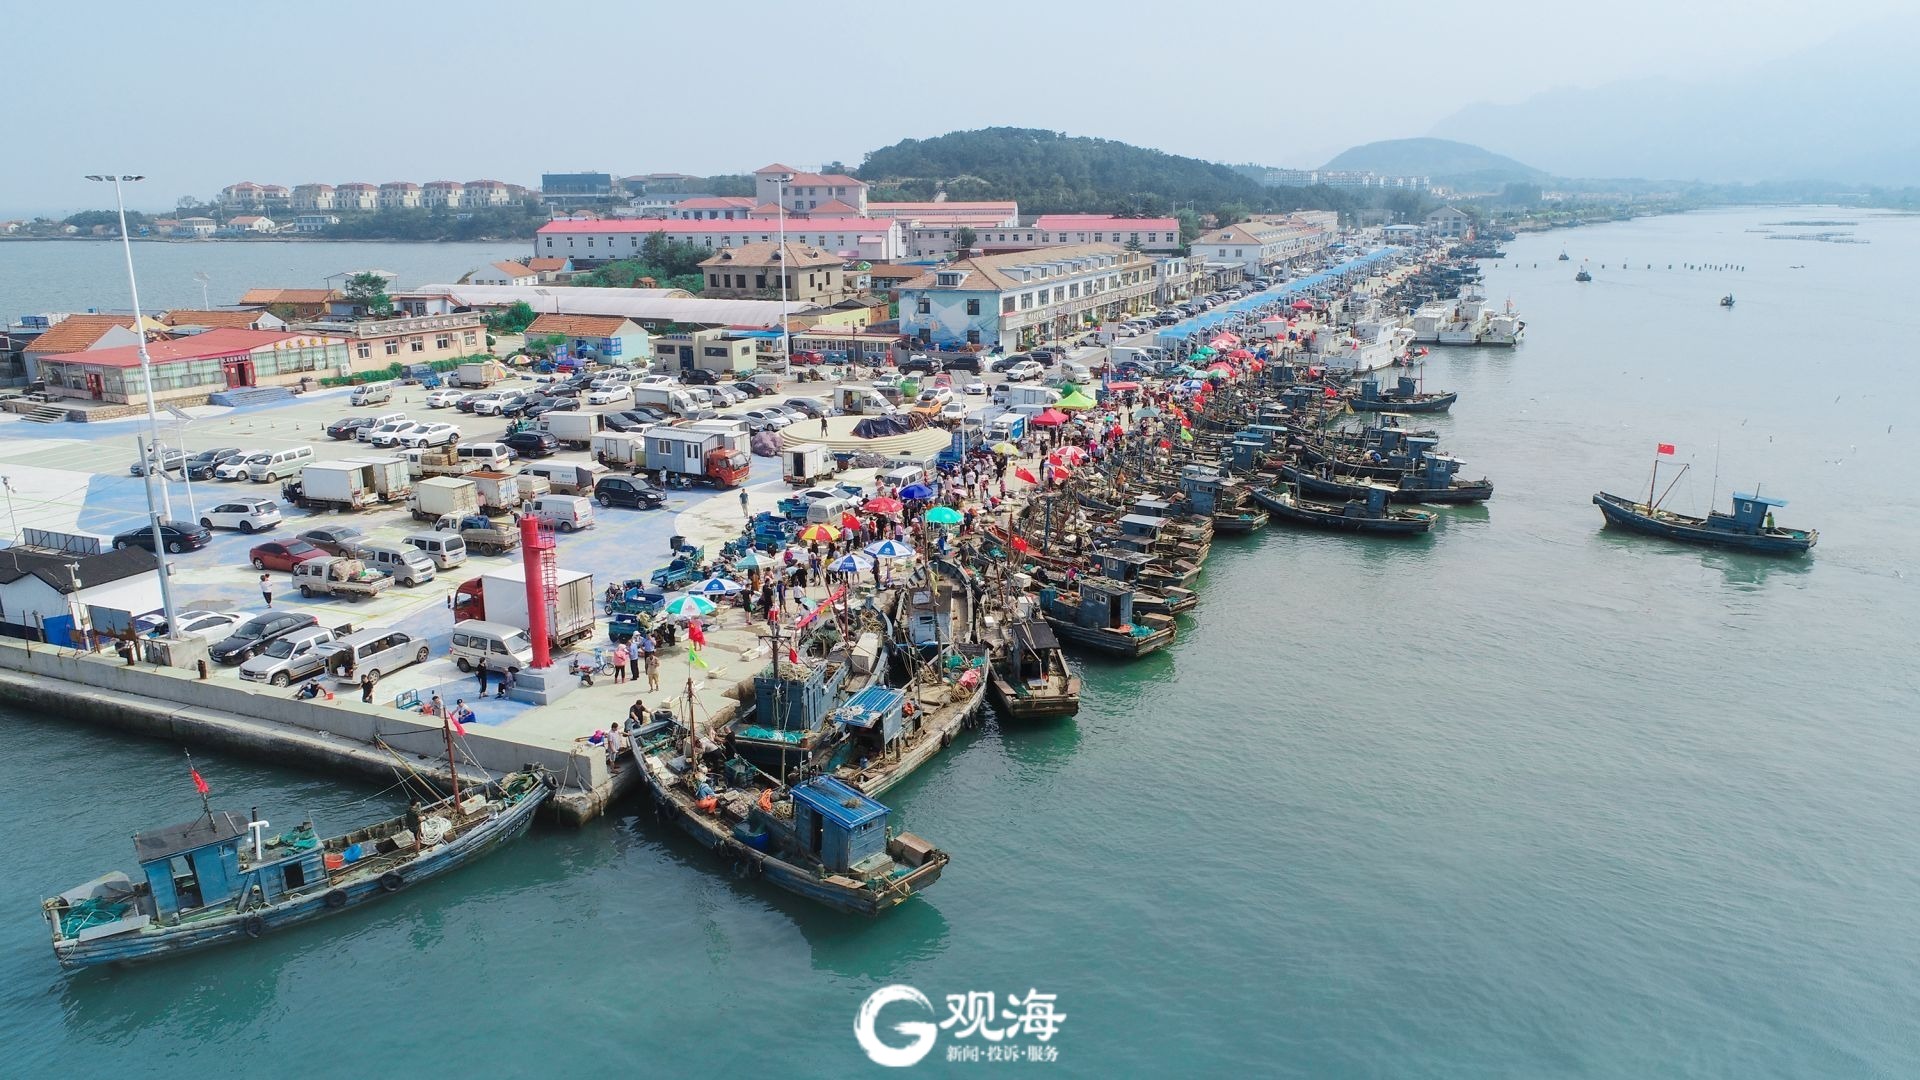 拥有近600年历史的王哥庄街道最大的港东渔码头也恢复的往昔的繁忙与